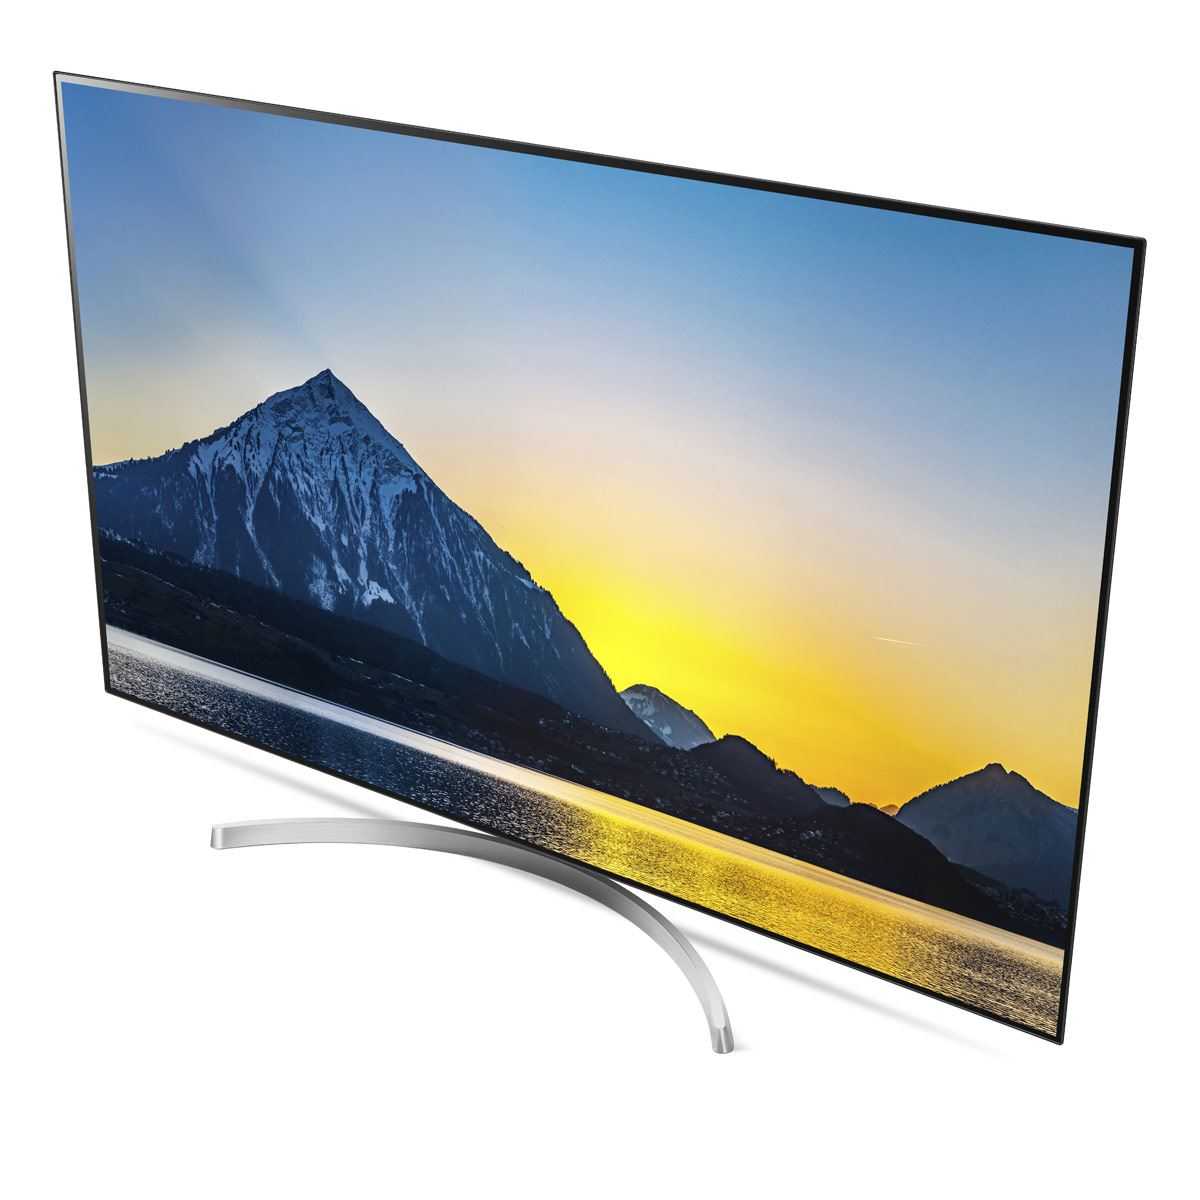 Телевизор lg 55" 55la620v черный full hd wifi (rus) - купить , скидки, цена, отзывы, обзор, характеристики - телевизоры